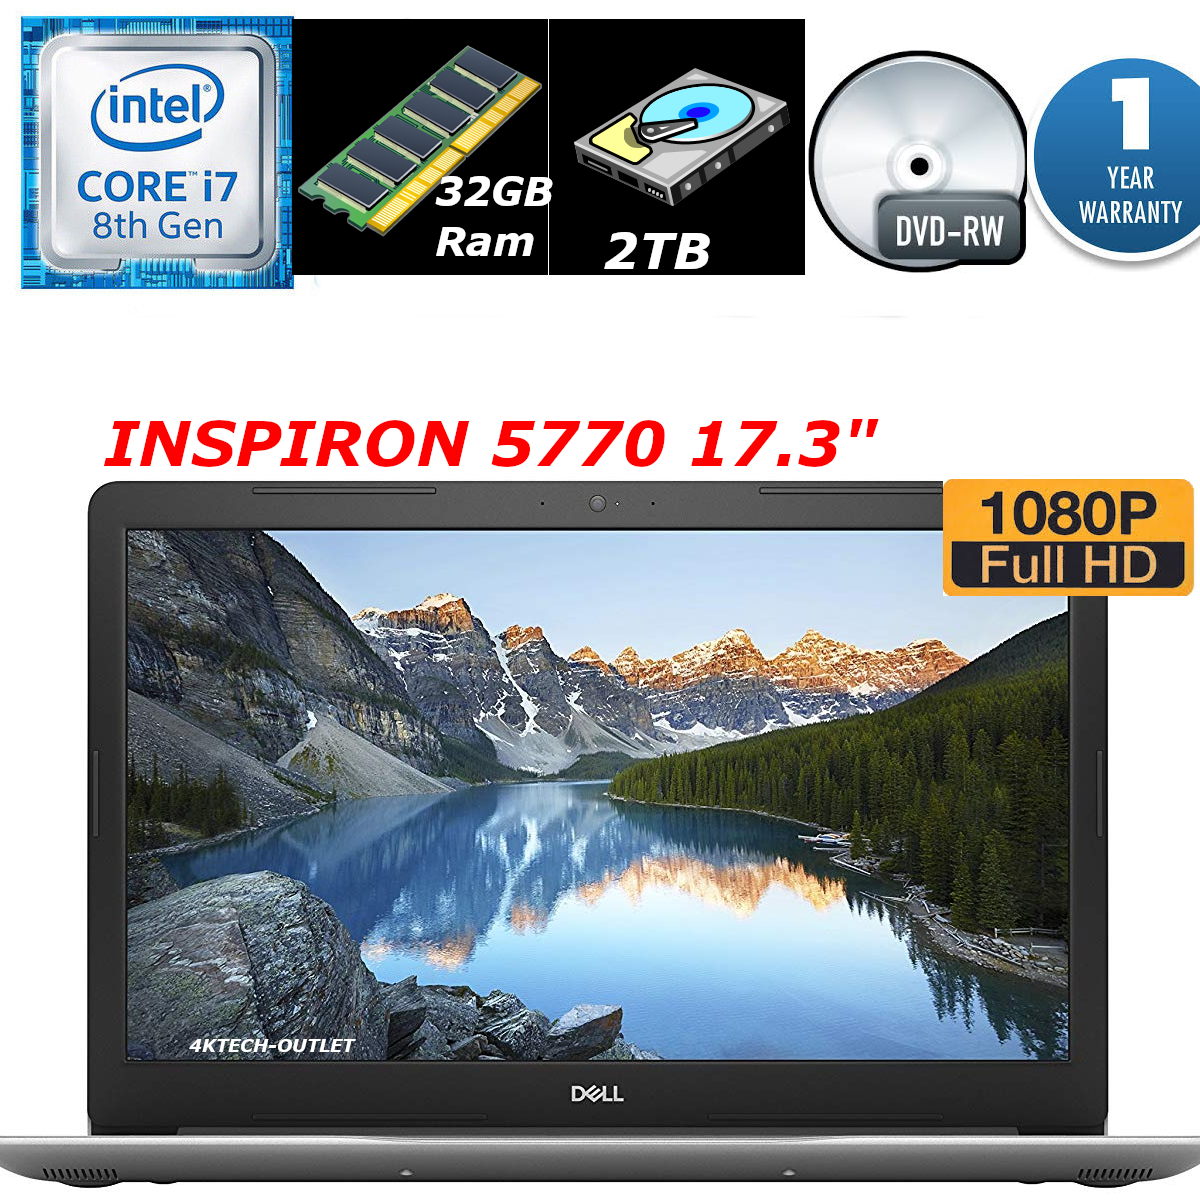 Dell Inspiron 5000 5770 17.3" i7-8550U Quad-Core/1080P/32GB/2TB/Baklit 1YR WTY